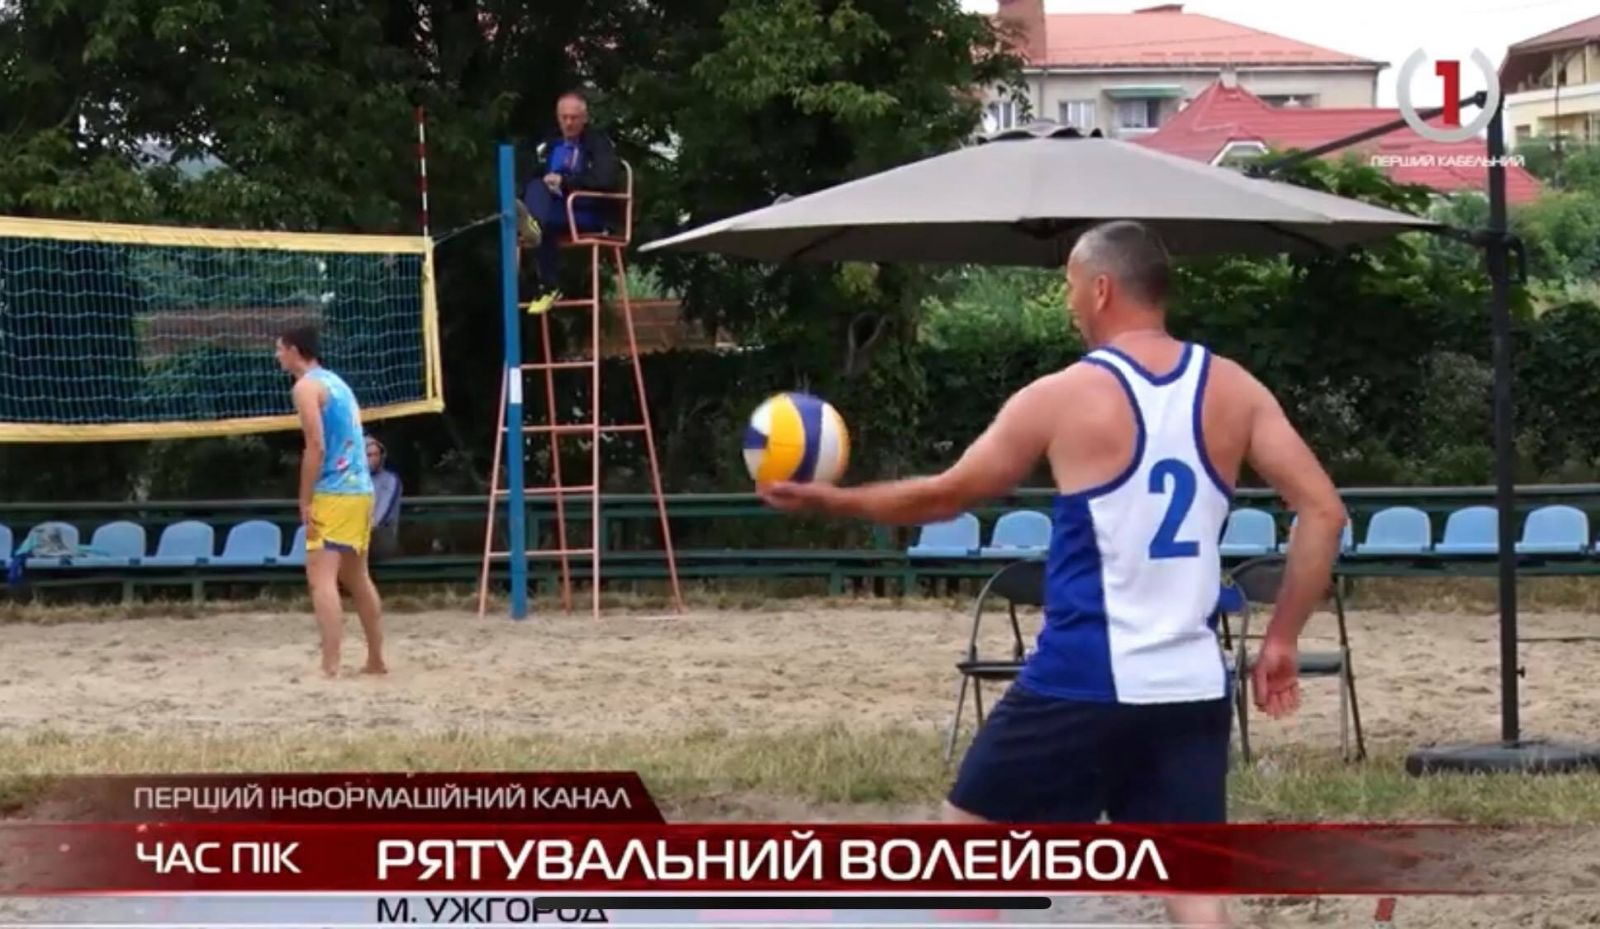 Надзвичайники з усієї країни влаштували в Ужгороді турнір з пляжного волейболу (ВІДЕО)